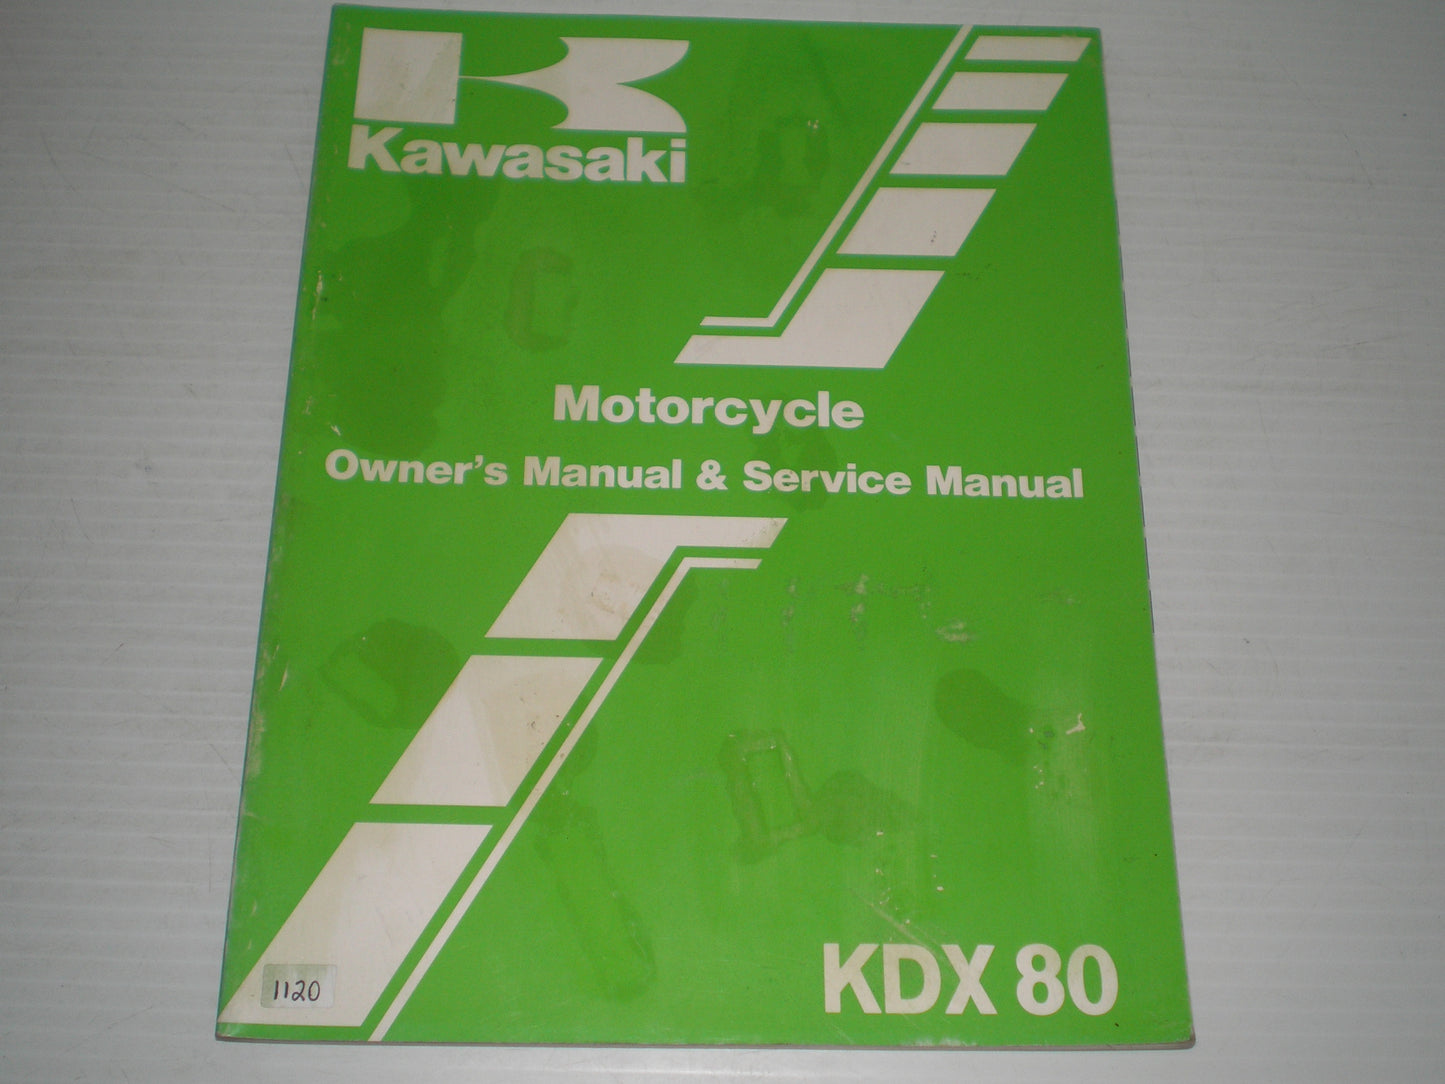 KAWASAKI KDX80 C3 1986  Owner's & Service Manual  99920-1327-01  #1120